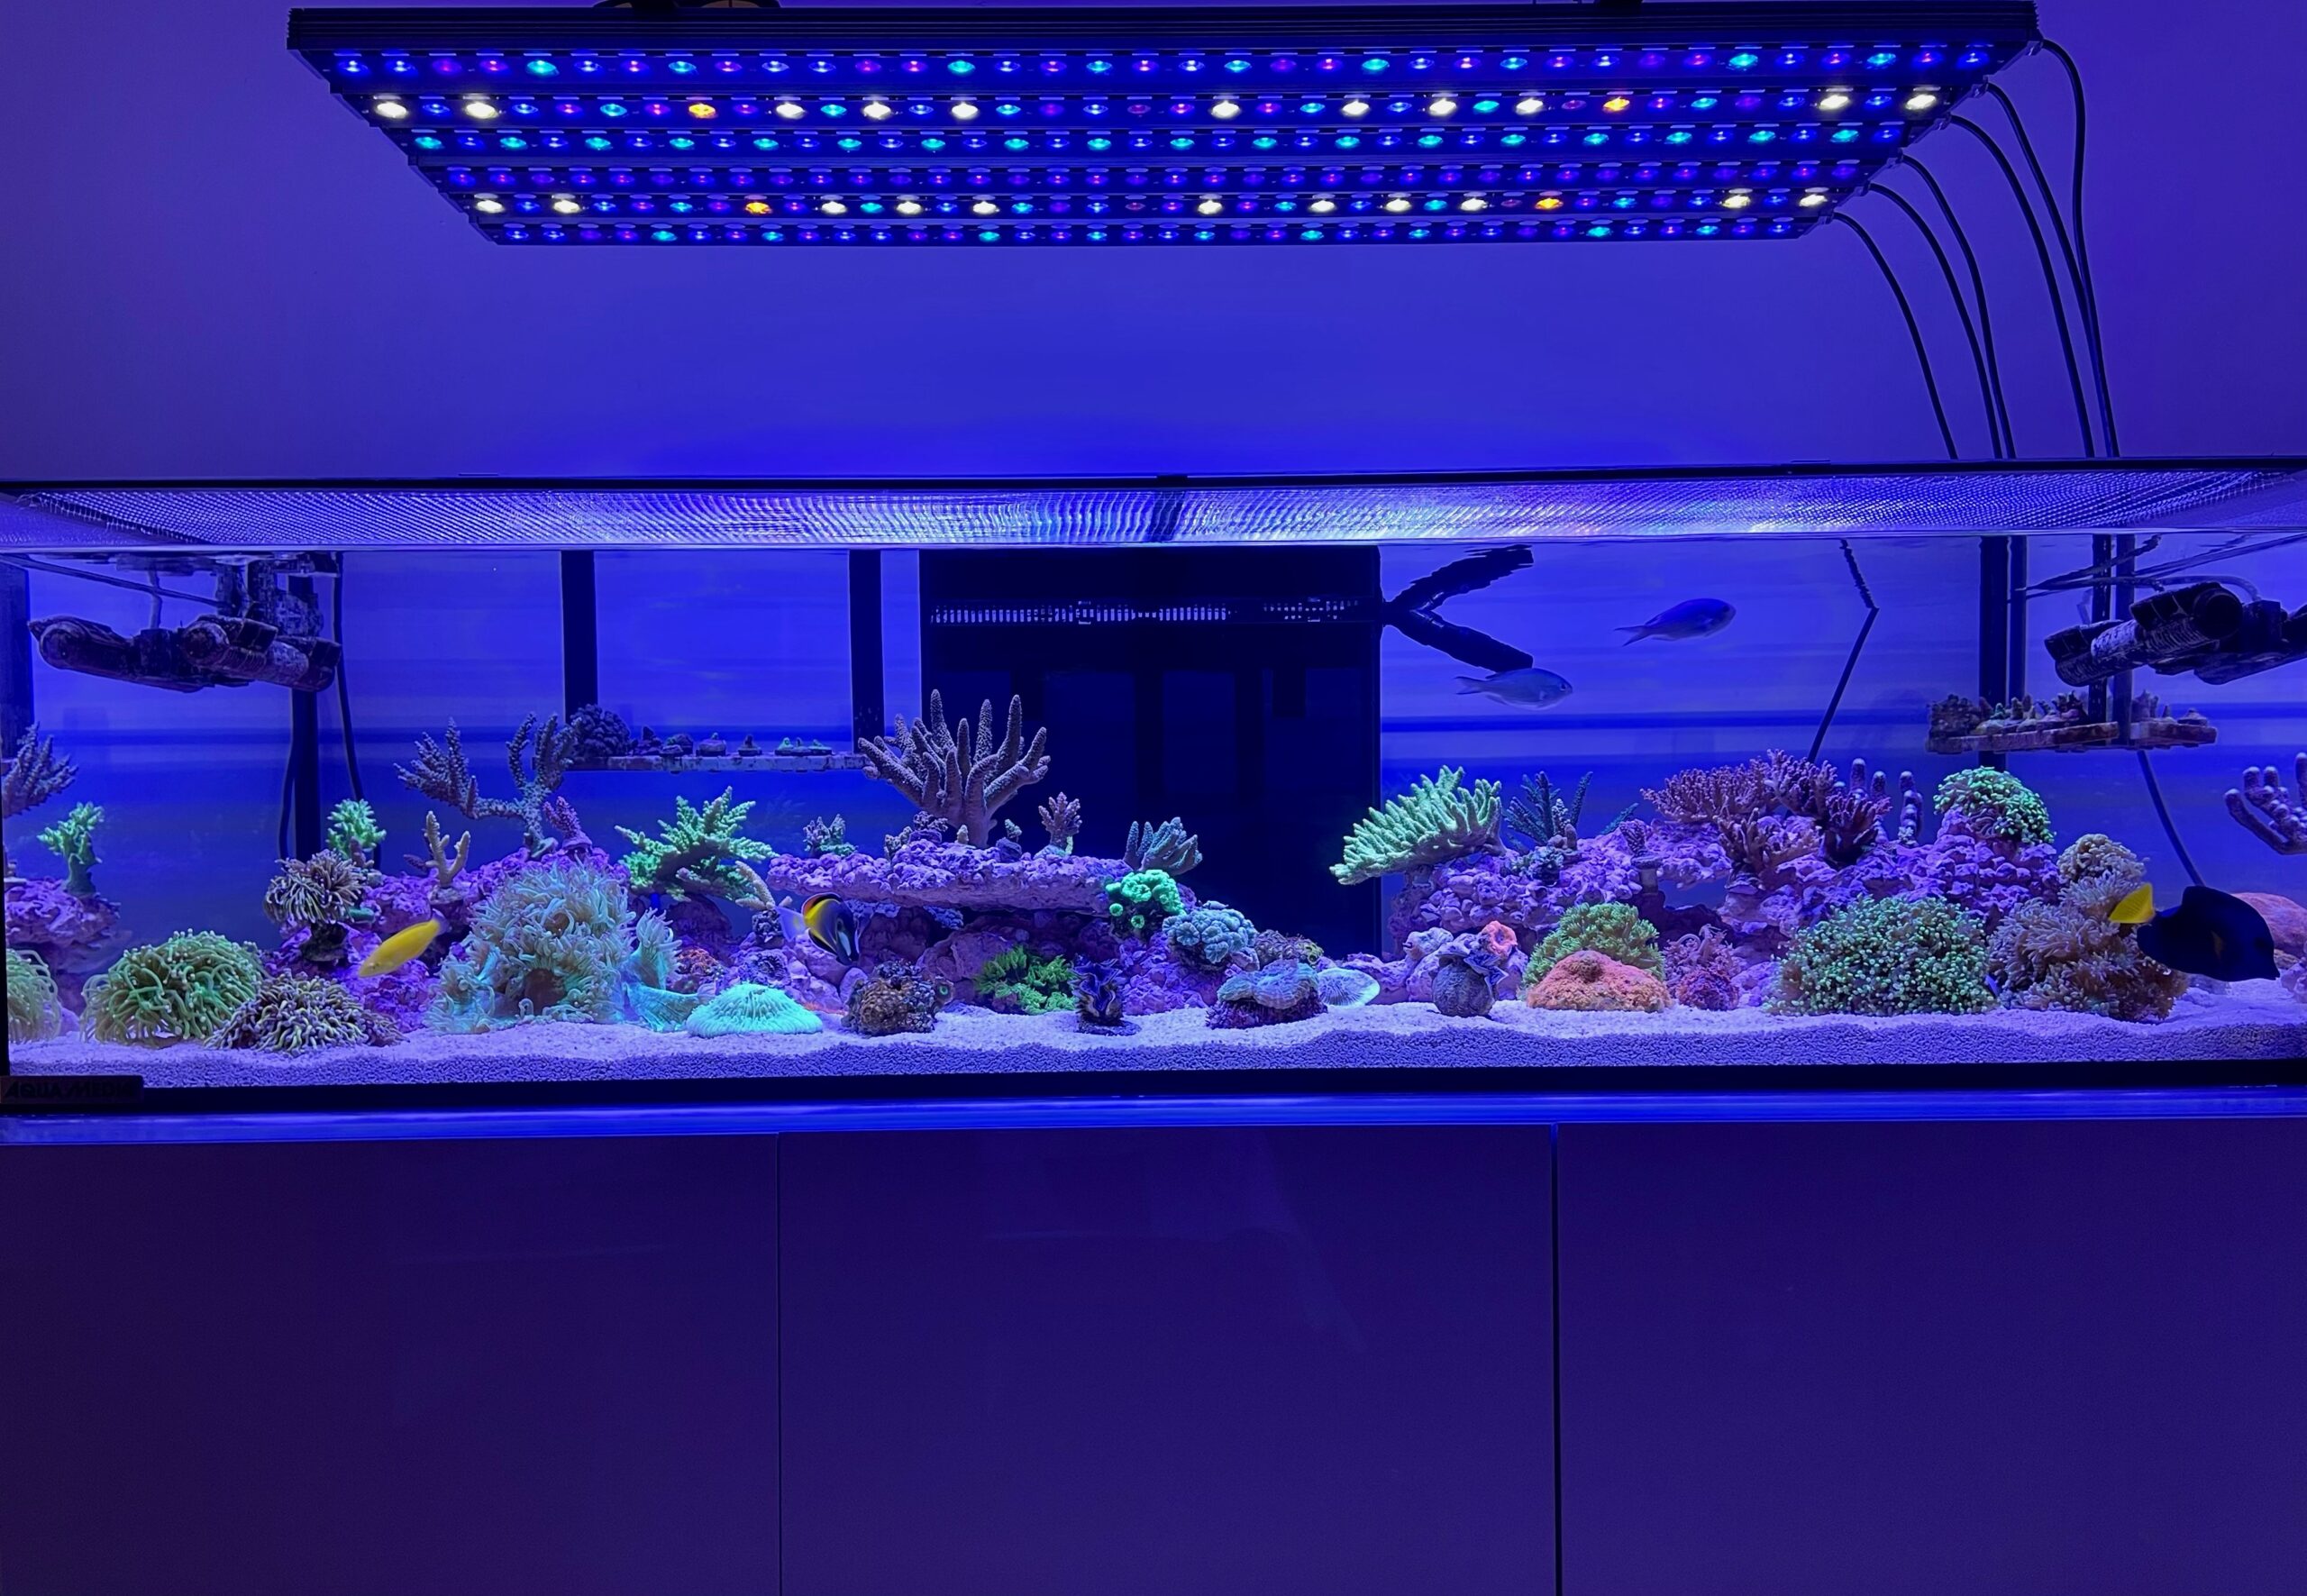 osix-or3-reef-acquarium-led-lighting-1